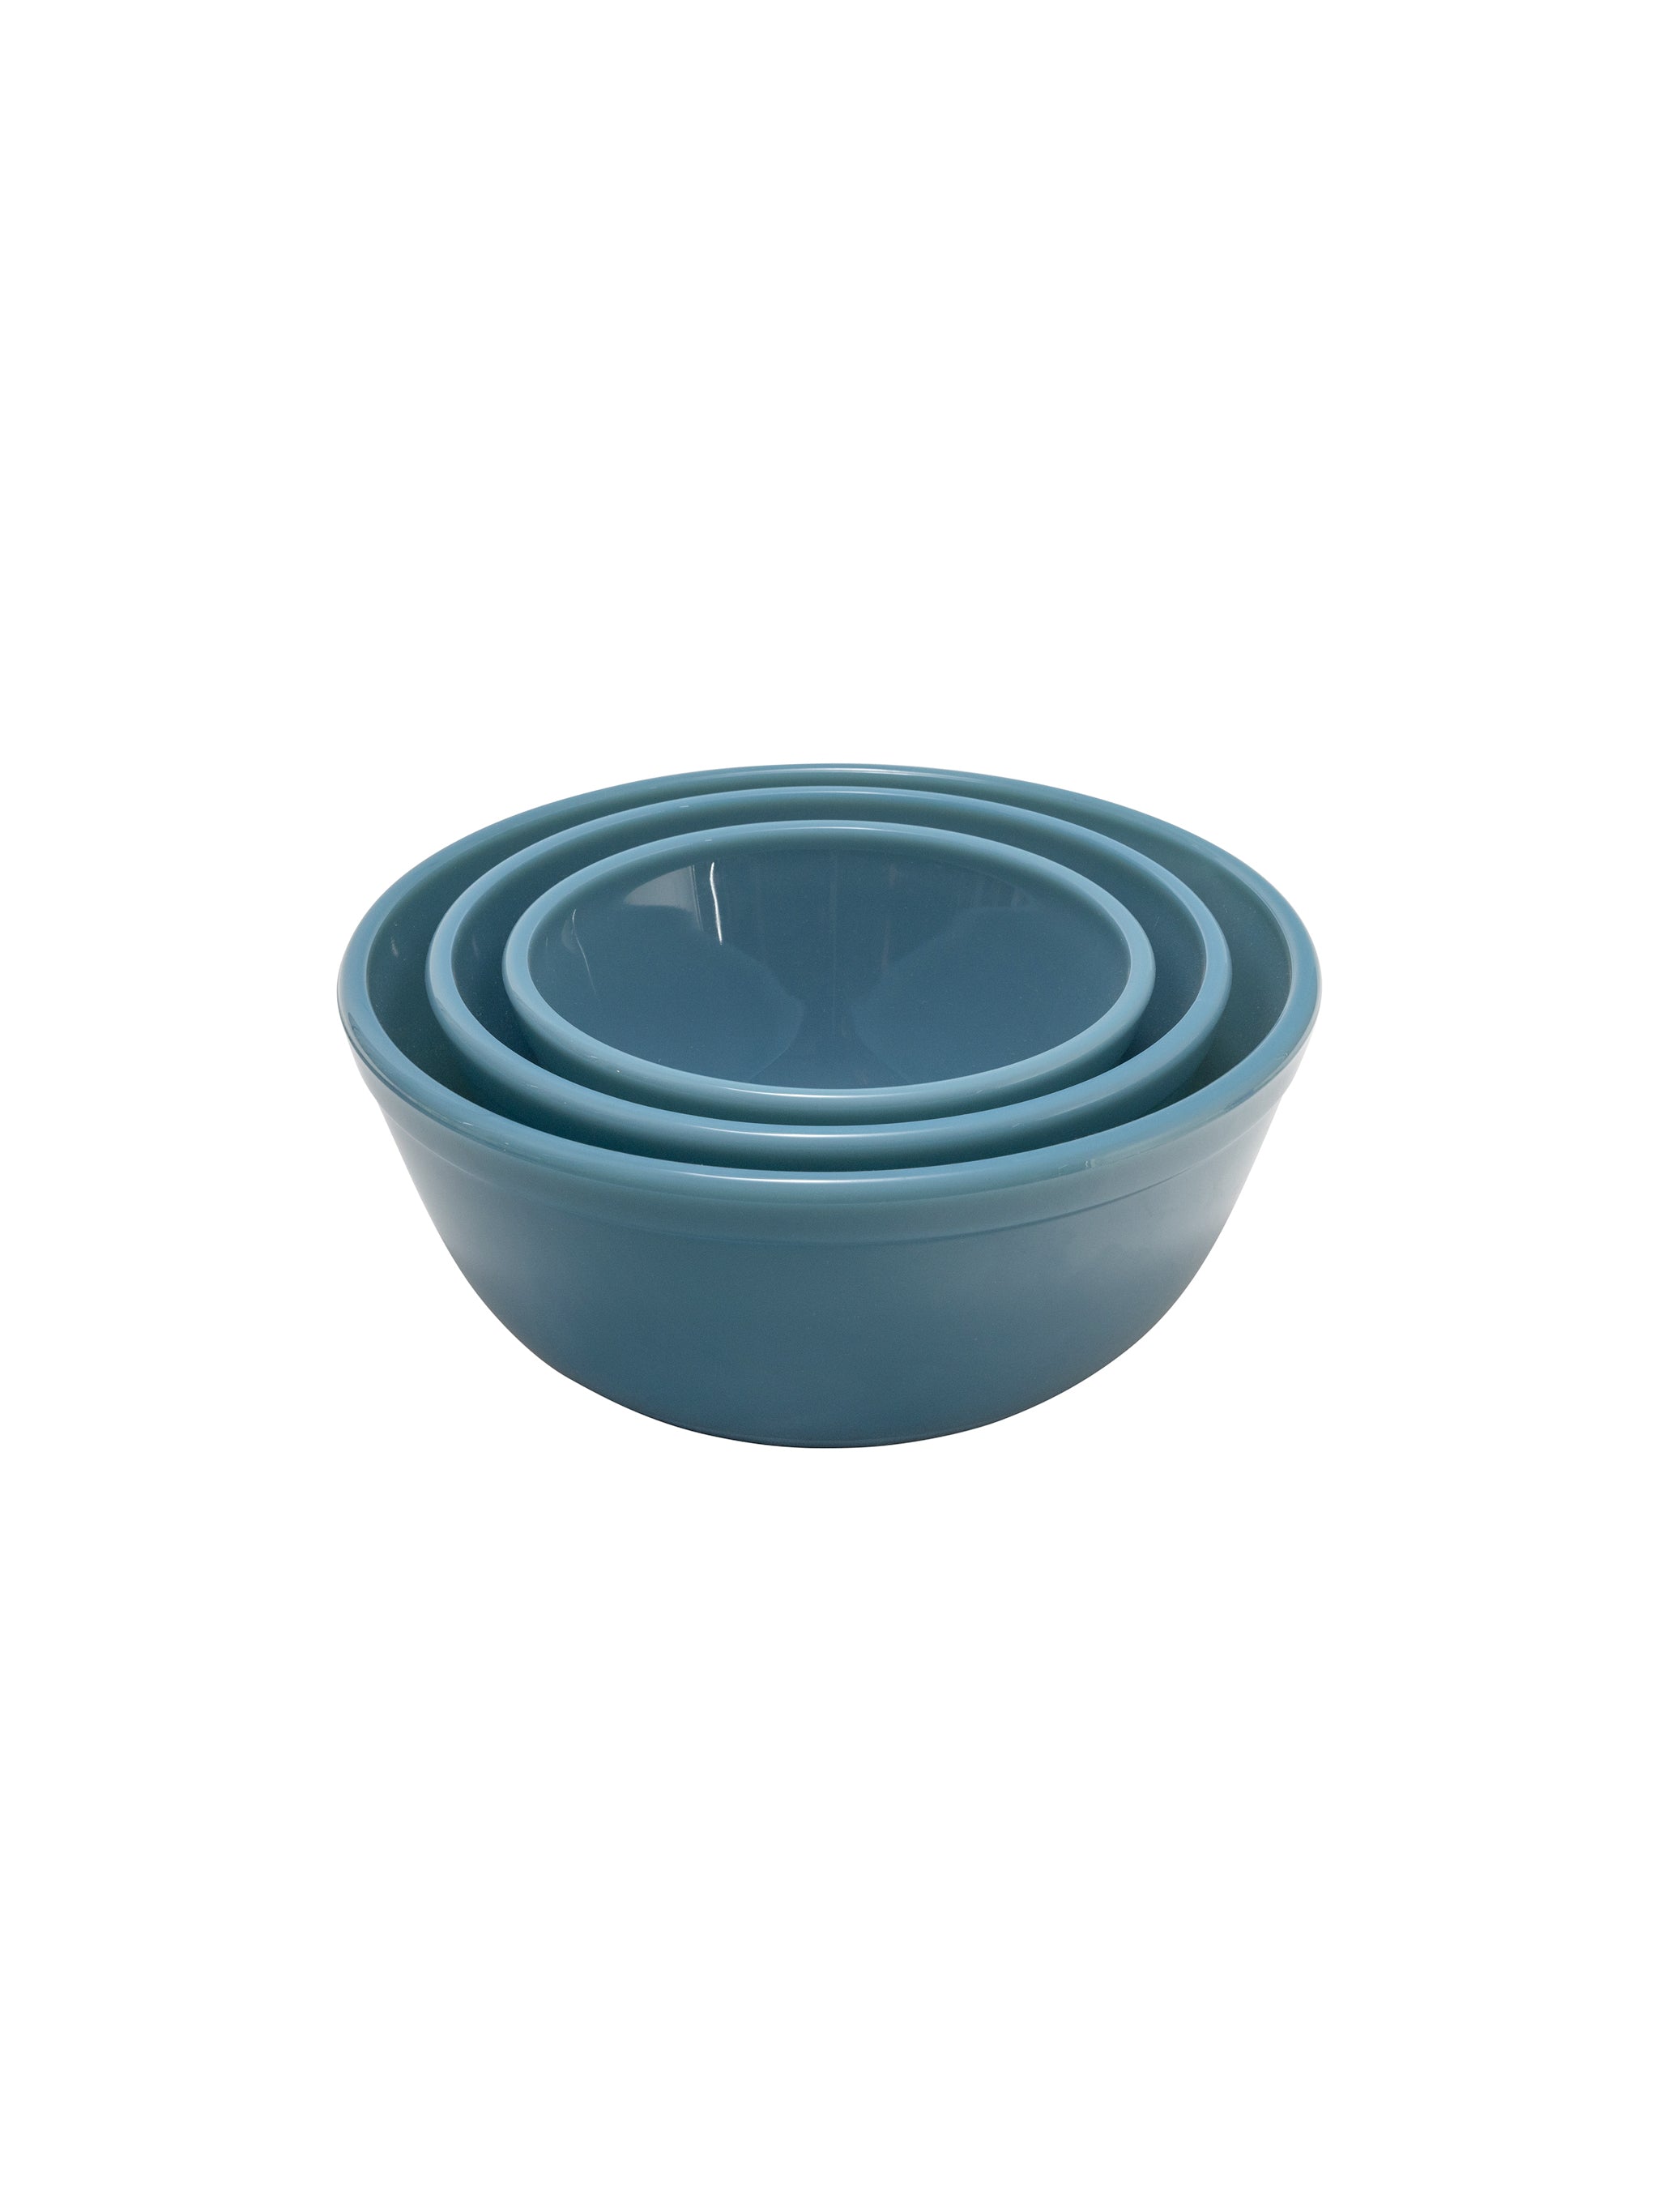 Mosser Glass Robins Egg Blue Vintage Mixing Bowl Set